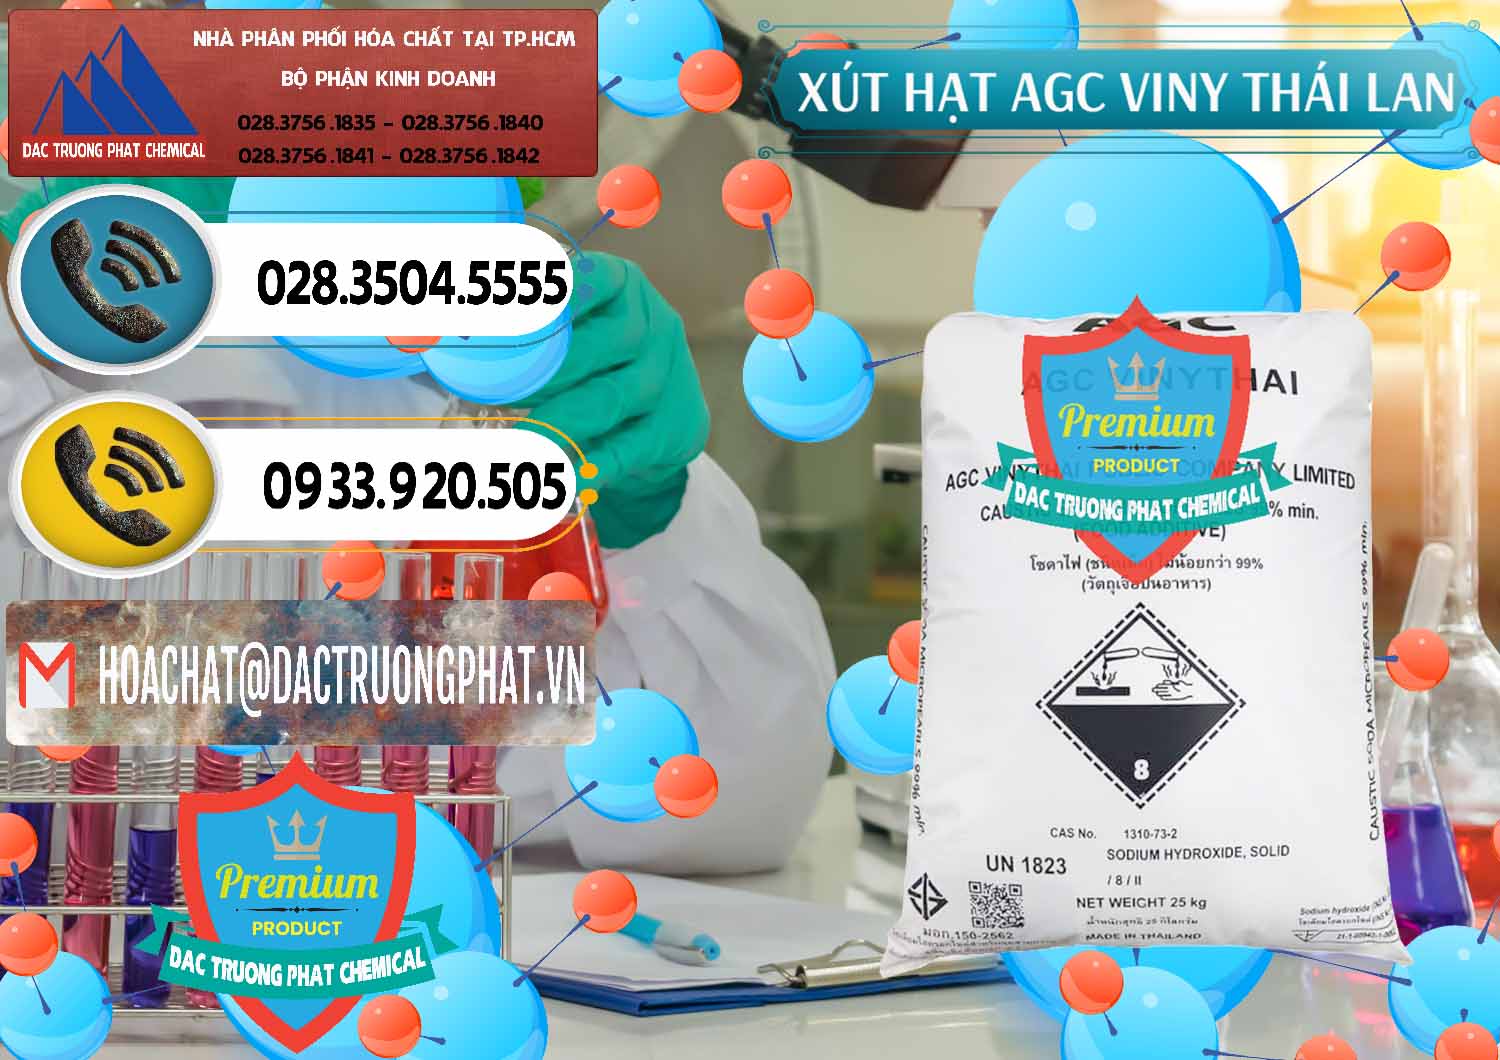 Cty phân phối ( bán ) Xút Hạt - NaOH Bột 99% AGC Viny Thái Lan - 0399 - Chuyên kinh doanh ( phân phối ) hóa chất tại TP.HCM - hoachatdetnhuom.vn